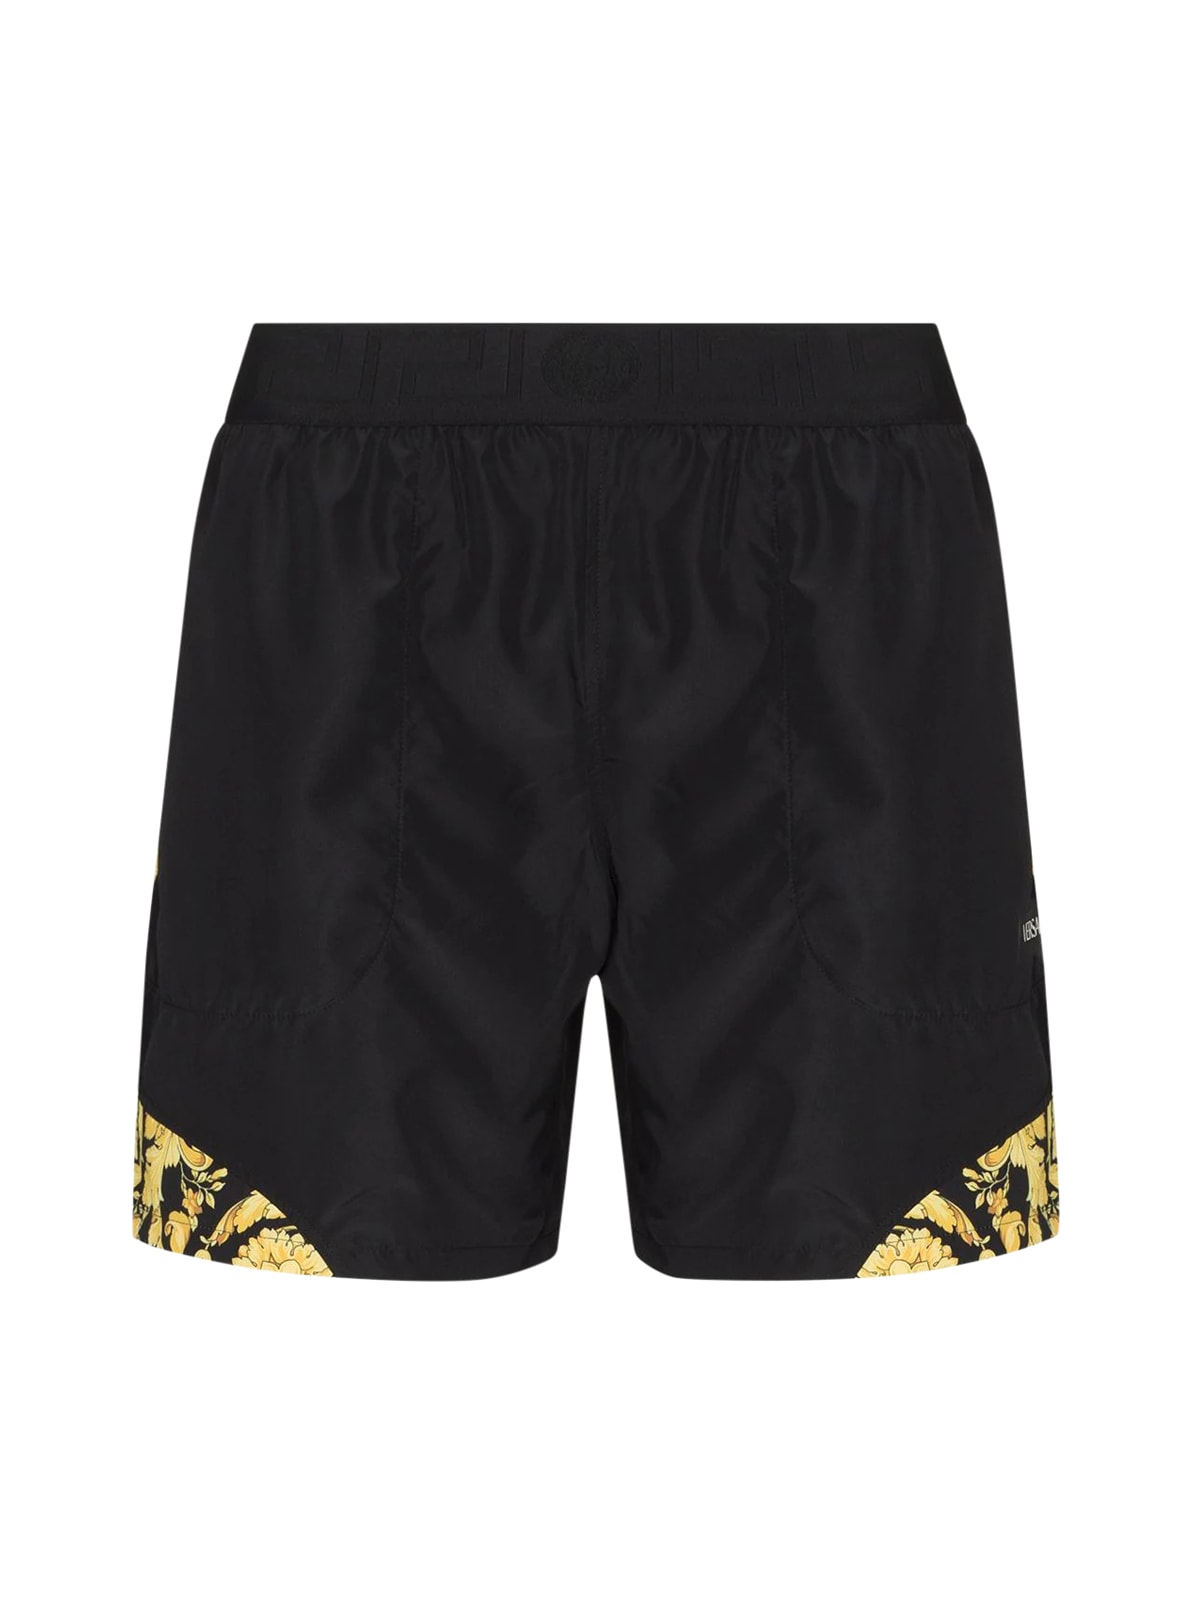 Versace Shorts Nylon Tasky Barocco